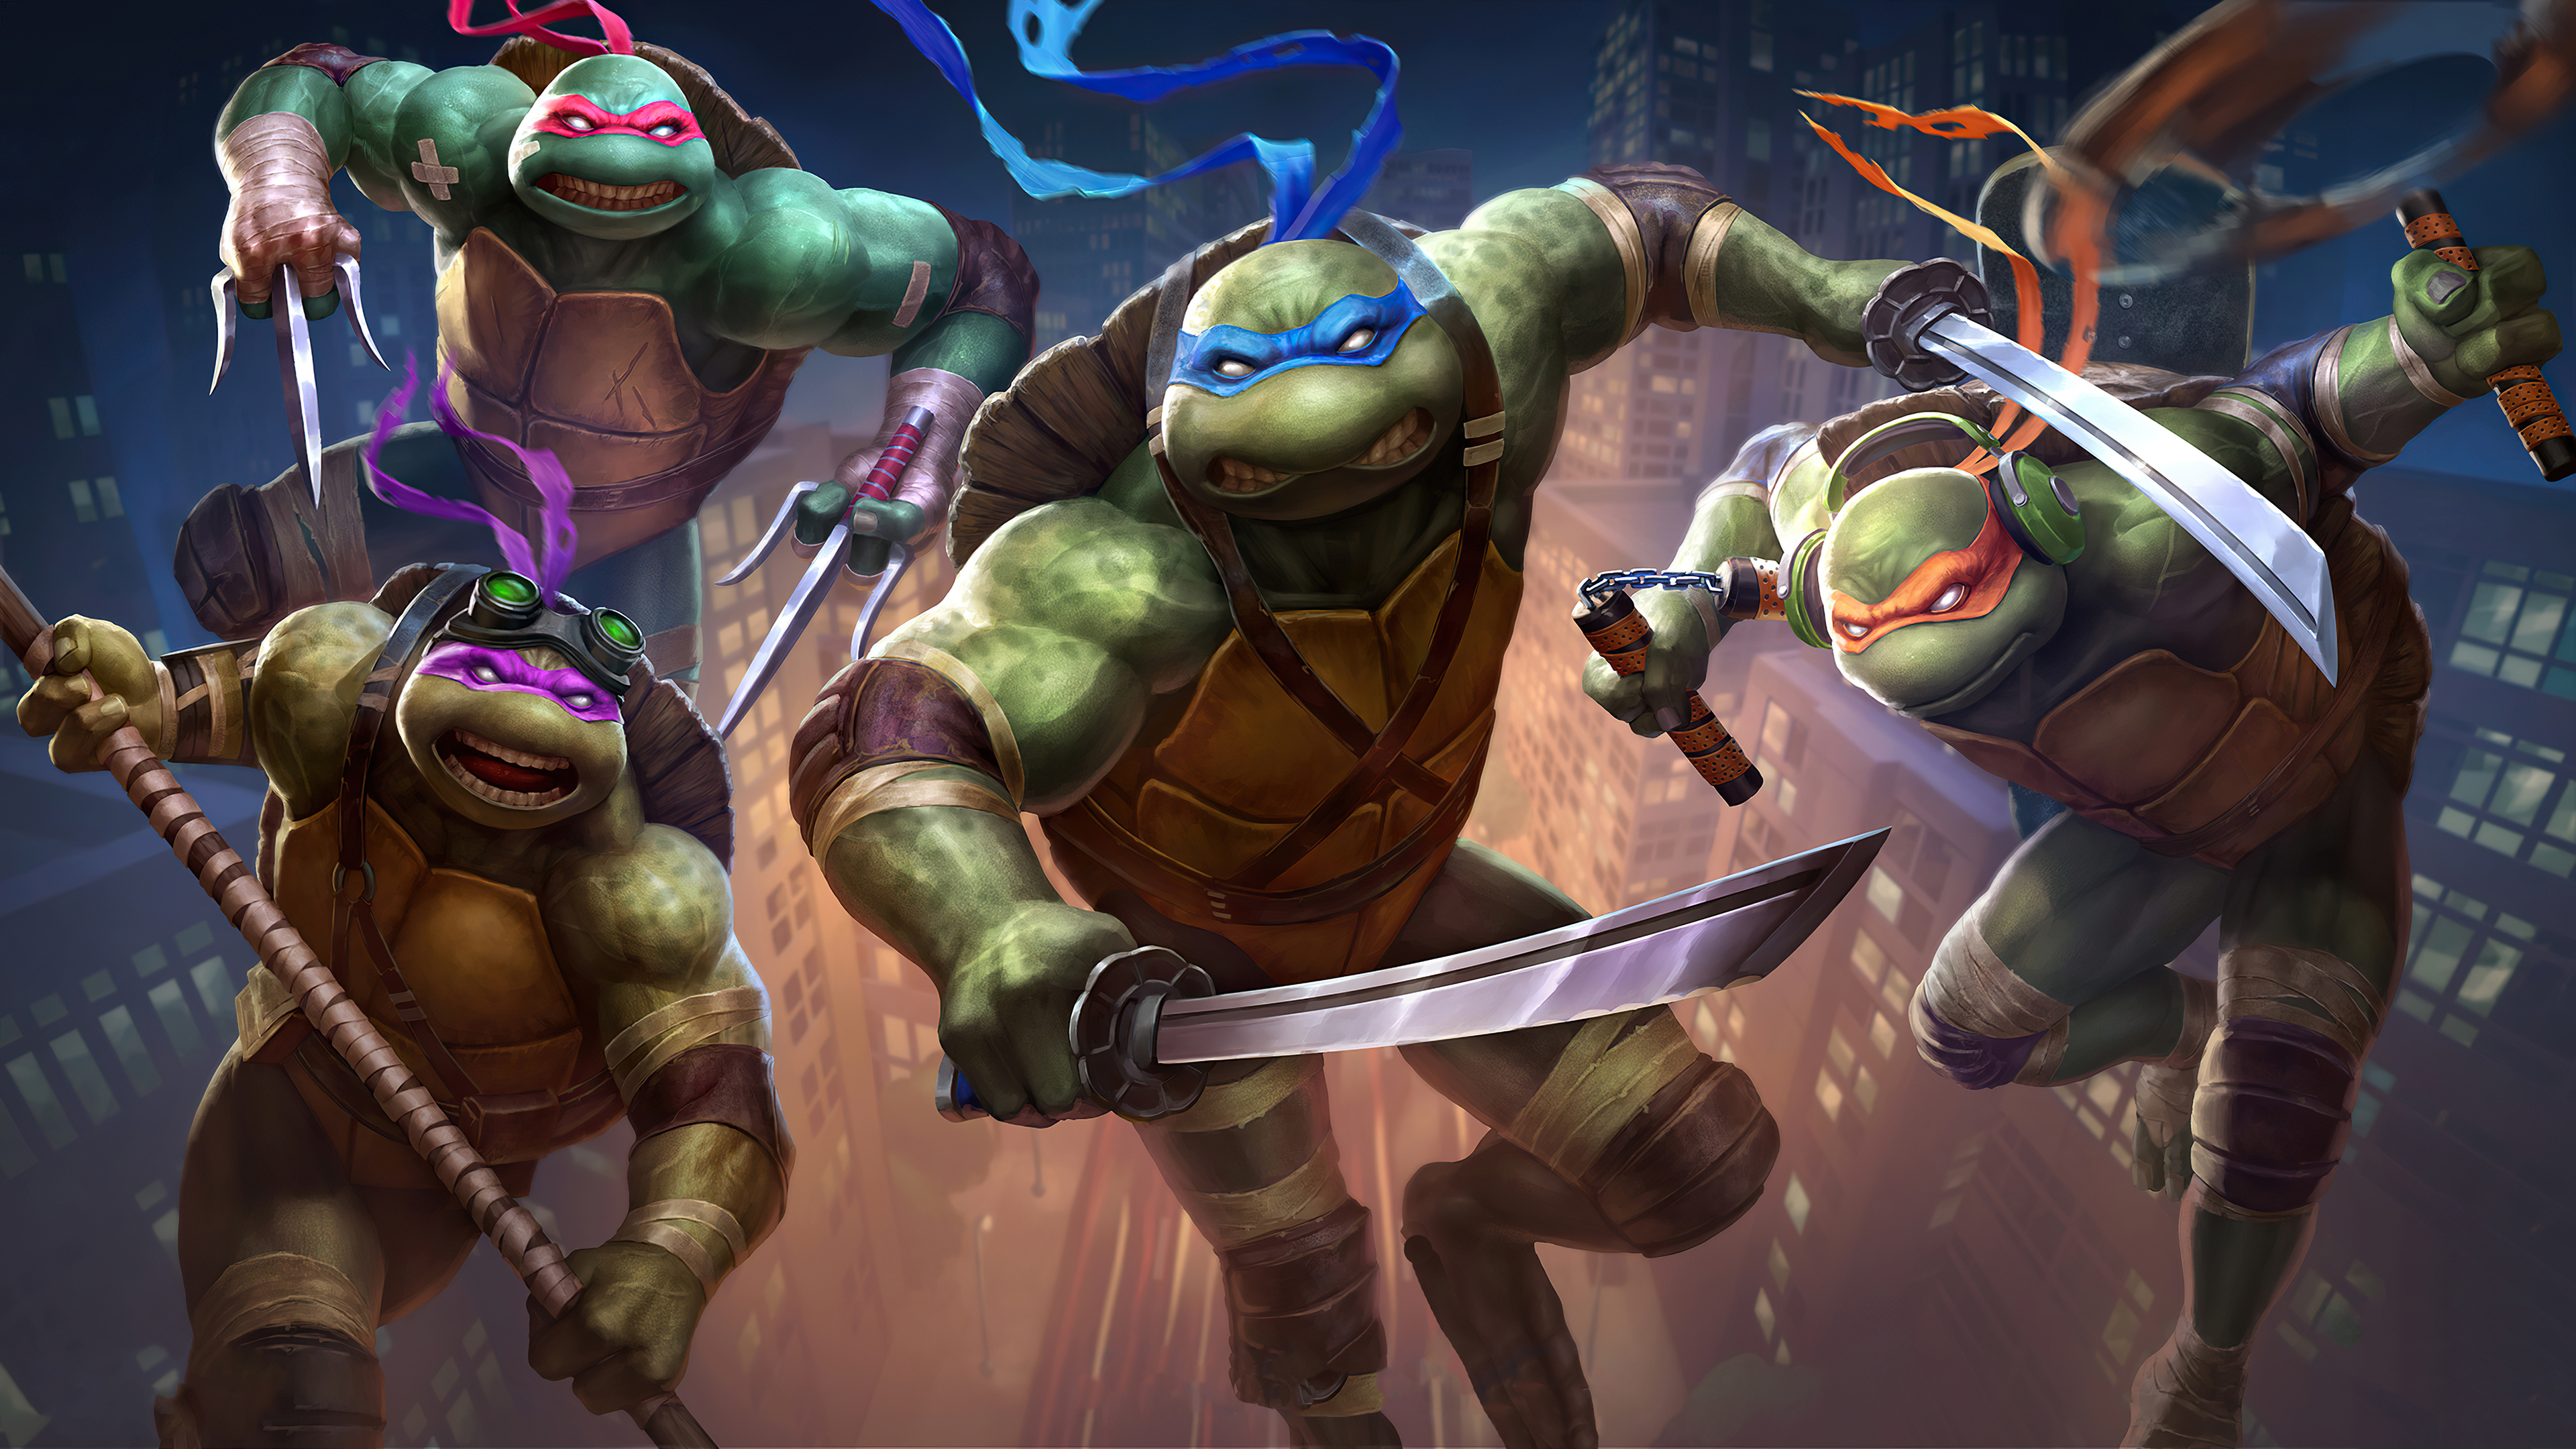 Donatello Tmnt Leonardo Tmnt Michelangelo Tmnt Raphael Tmnt Teenage Mutant Ninja Turtles 3840x2160